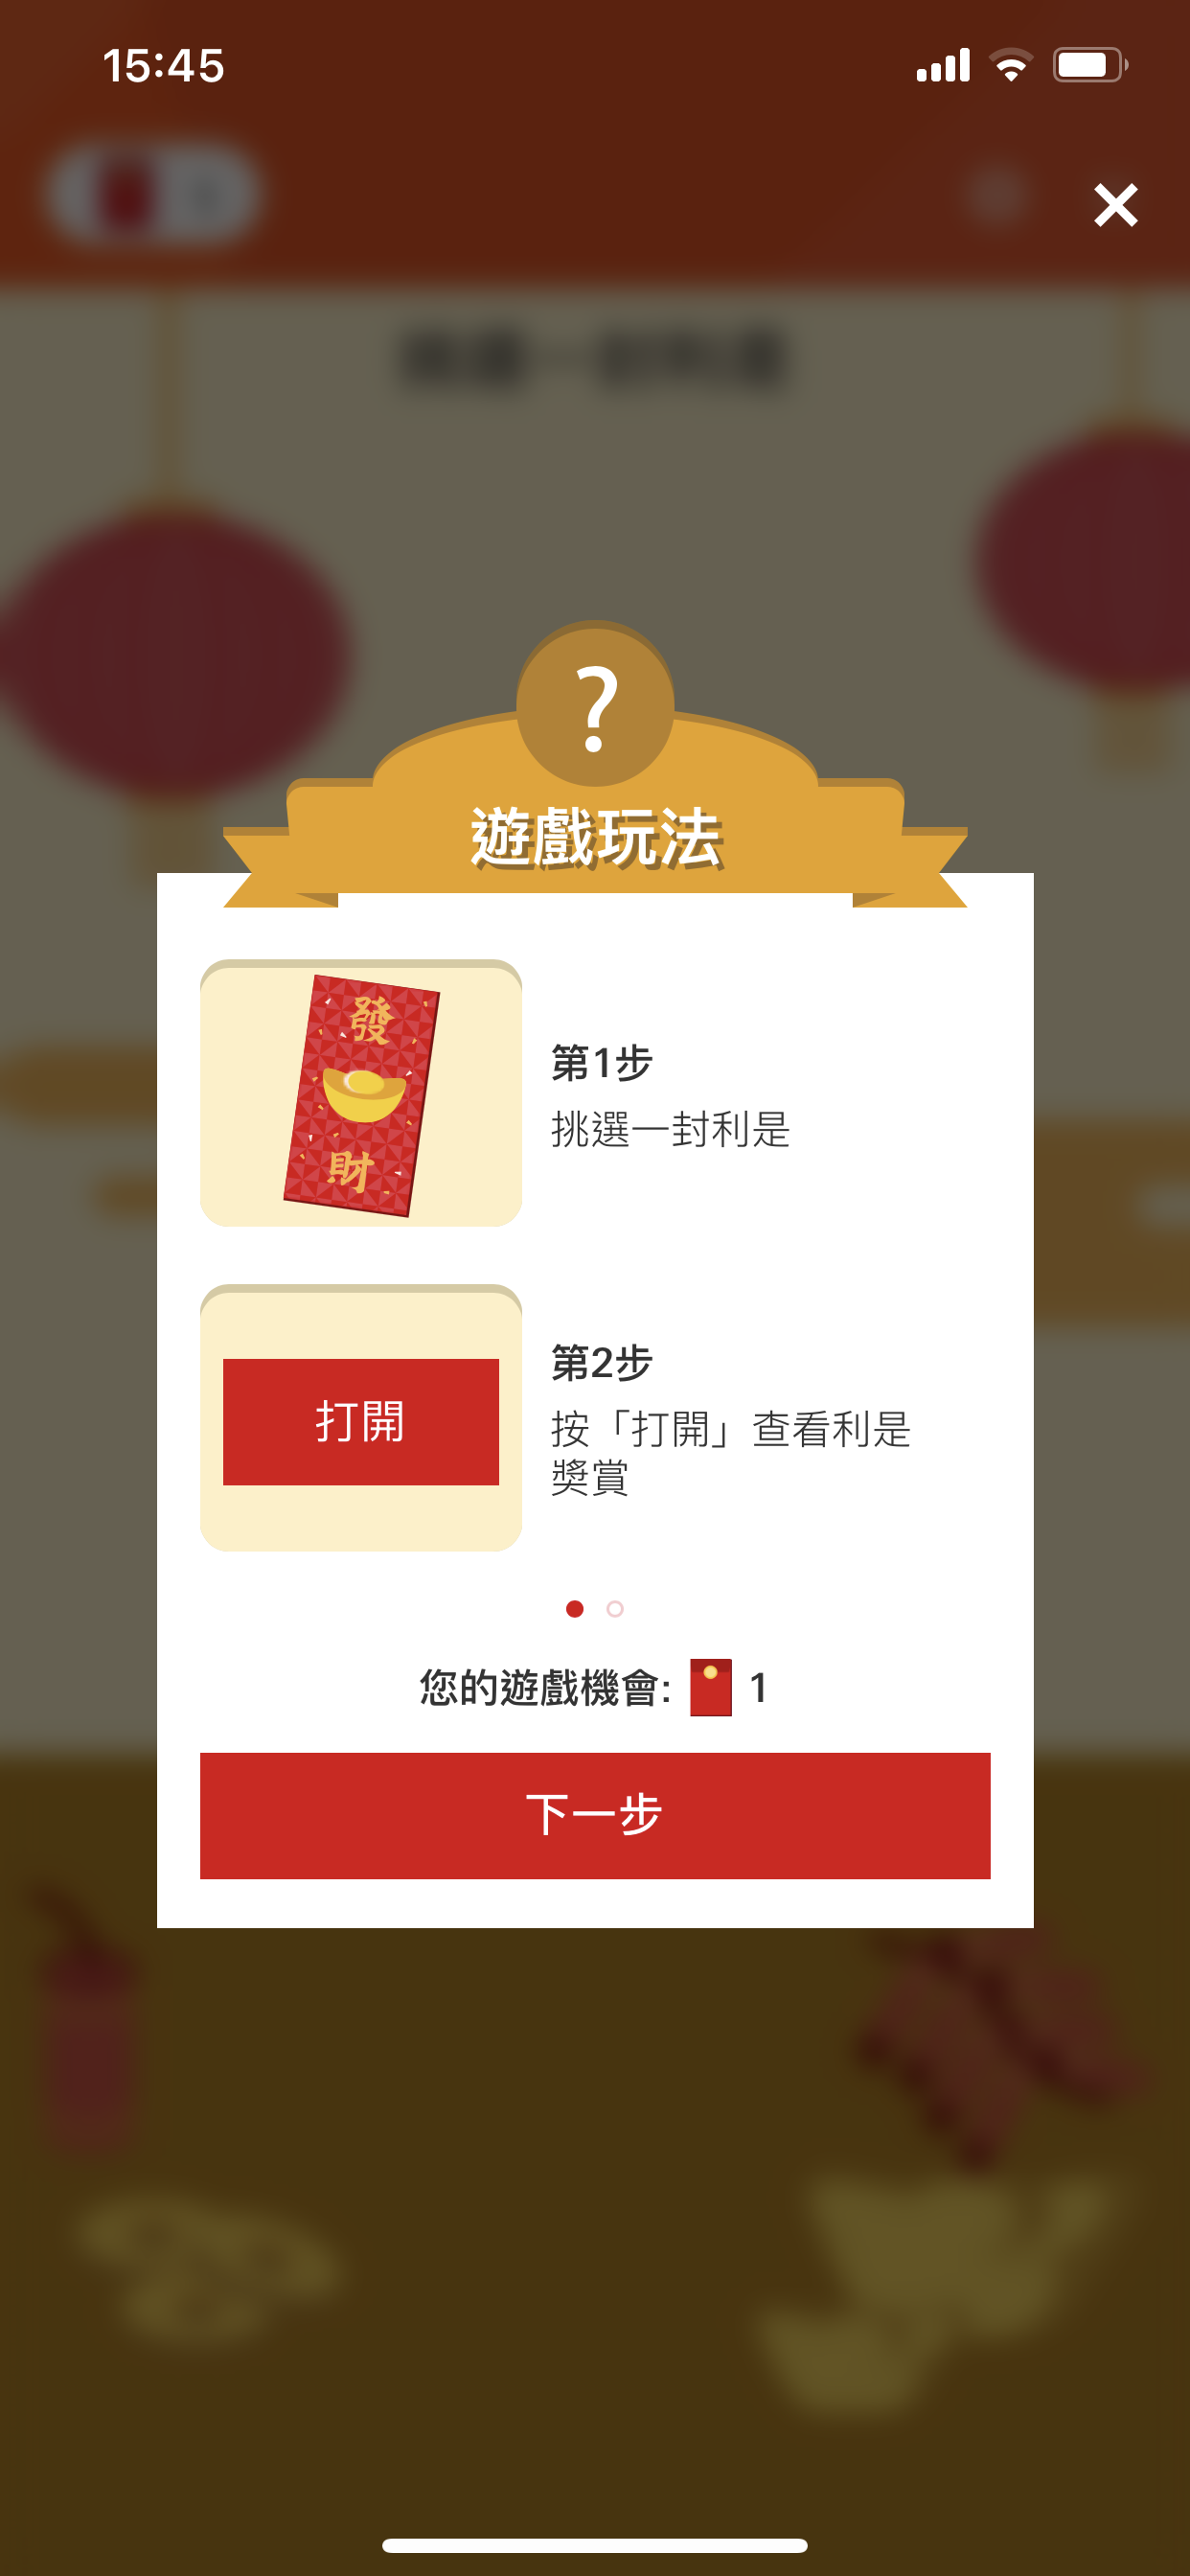 【HSBC Rewards+ App有獎小遊戲】 單一簽賬滿HK$500即有機會賺高達$128 更獲「1.23 Go Goal大抽獎」抽獎機會1次！